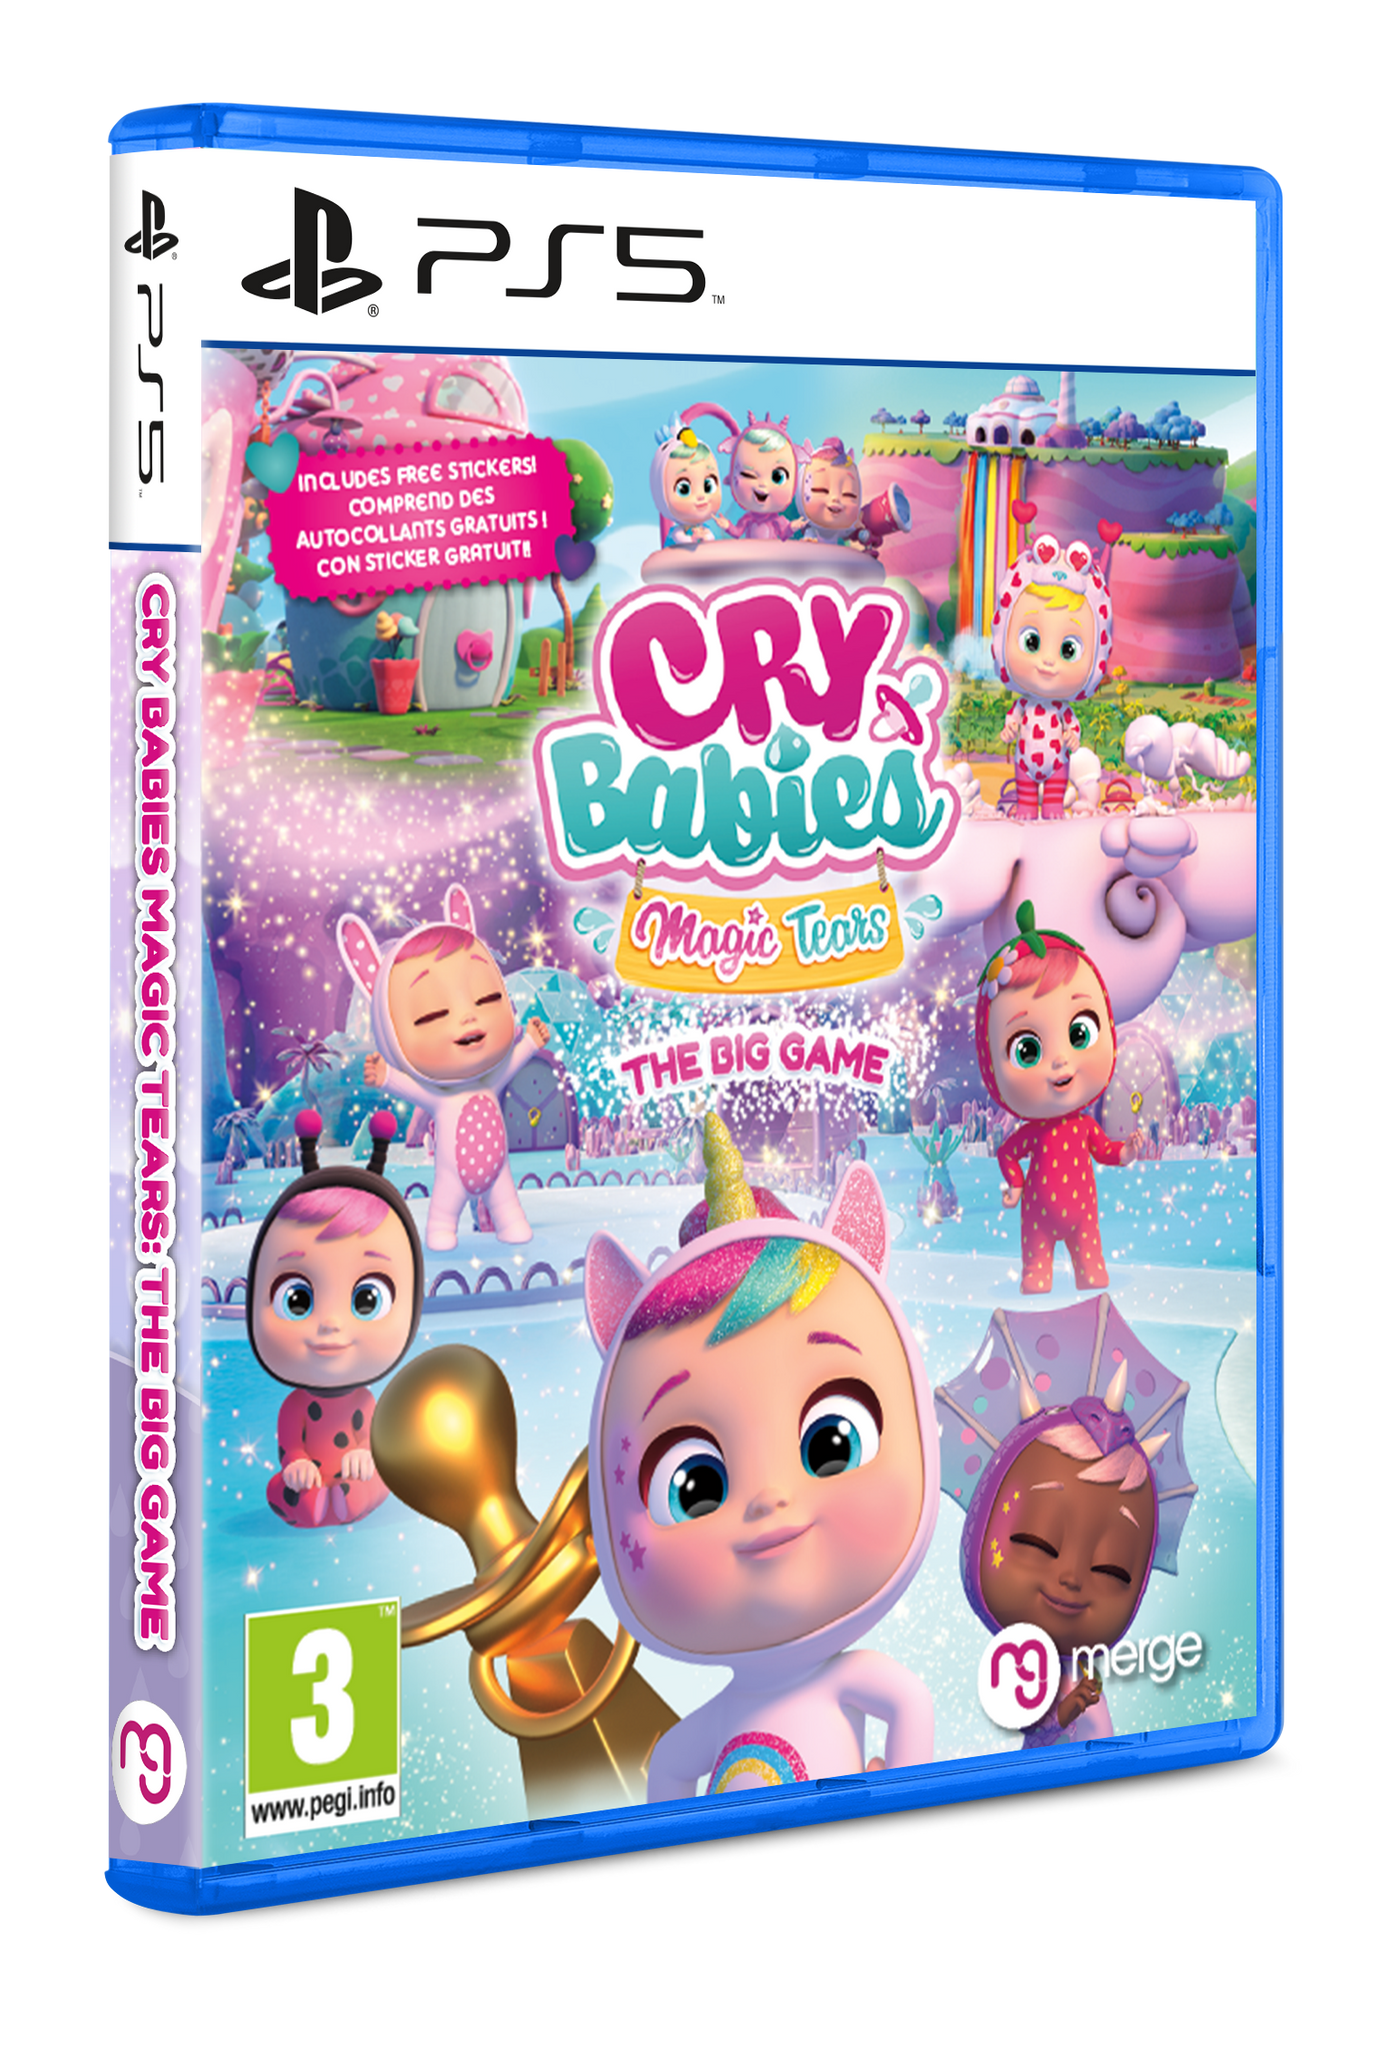 Cry Babies Magic Tears: The Big Game - O INÍCIO de GAMEPLAY, em